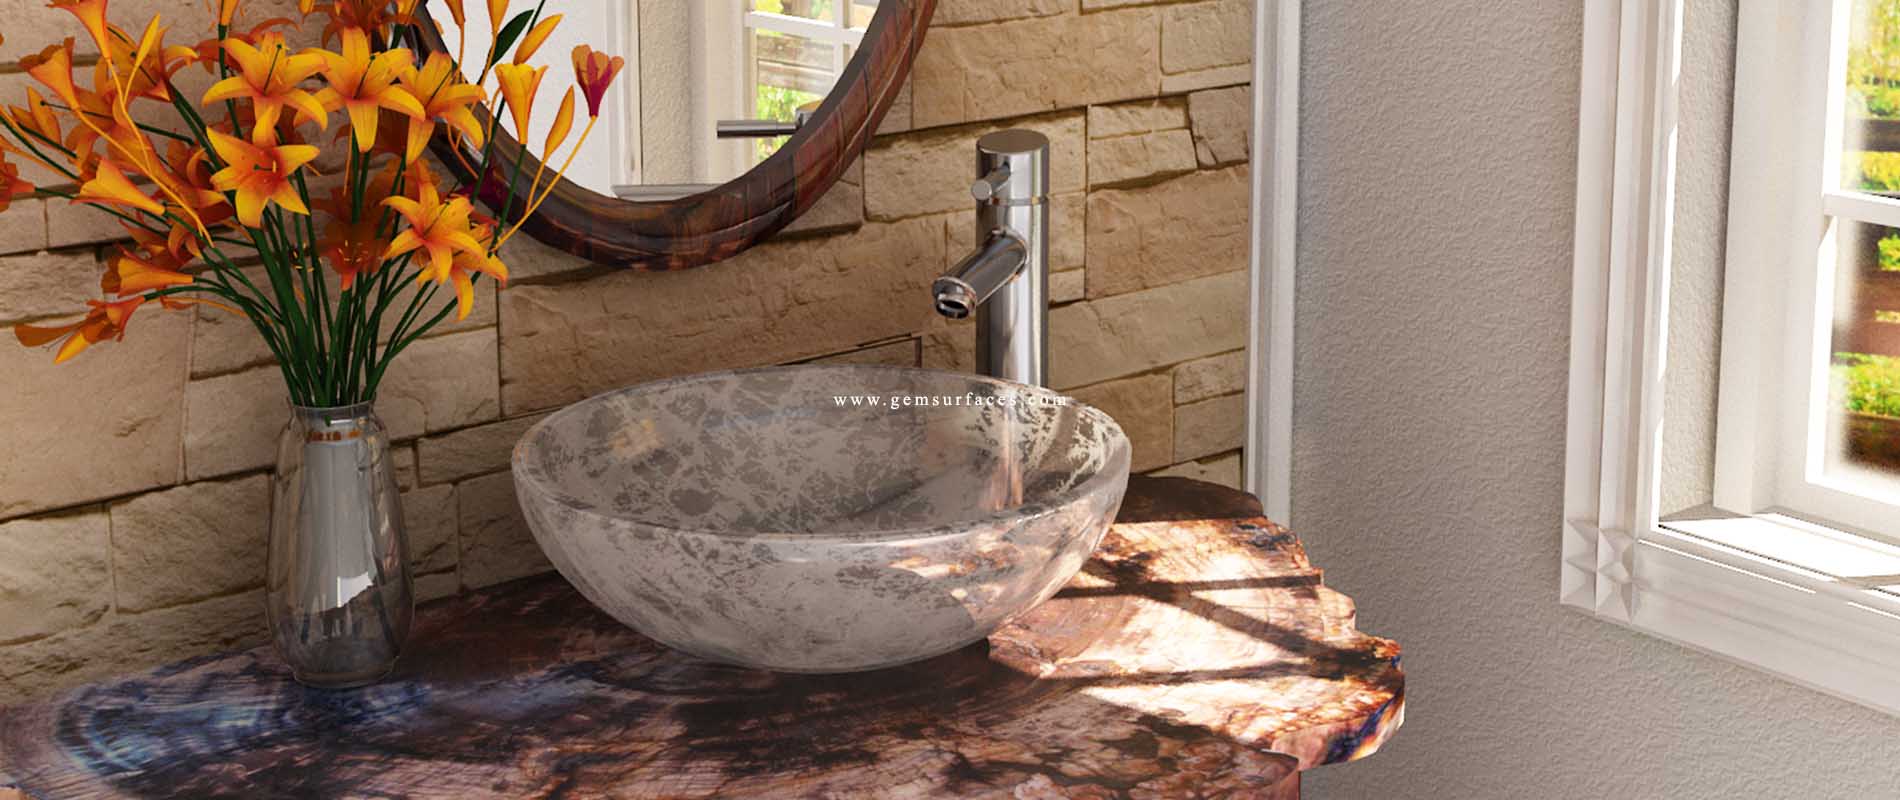 gemstone kitchen sink 1616